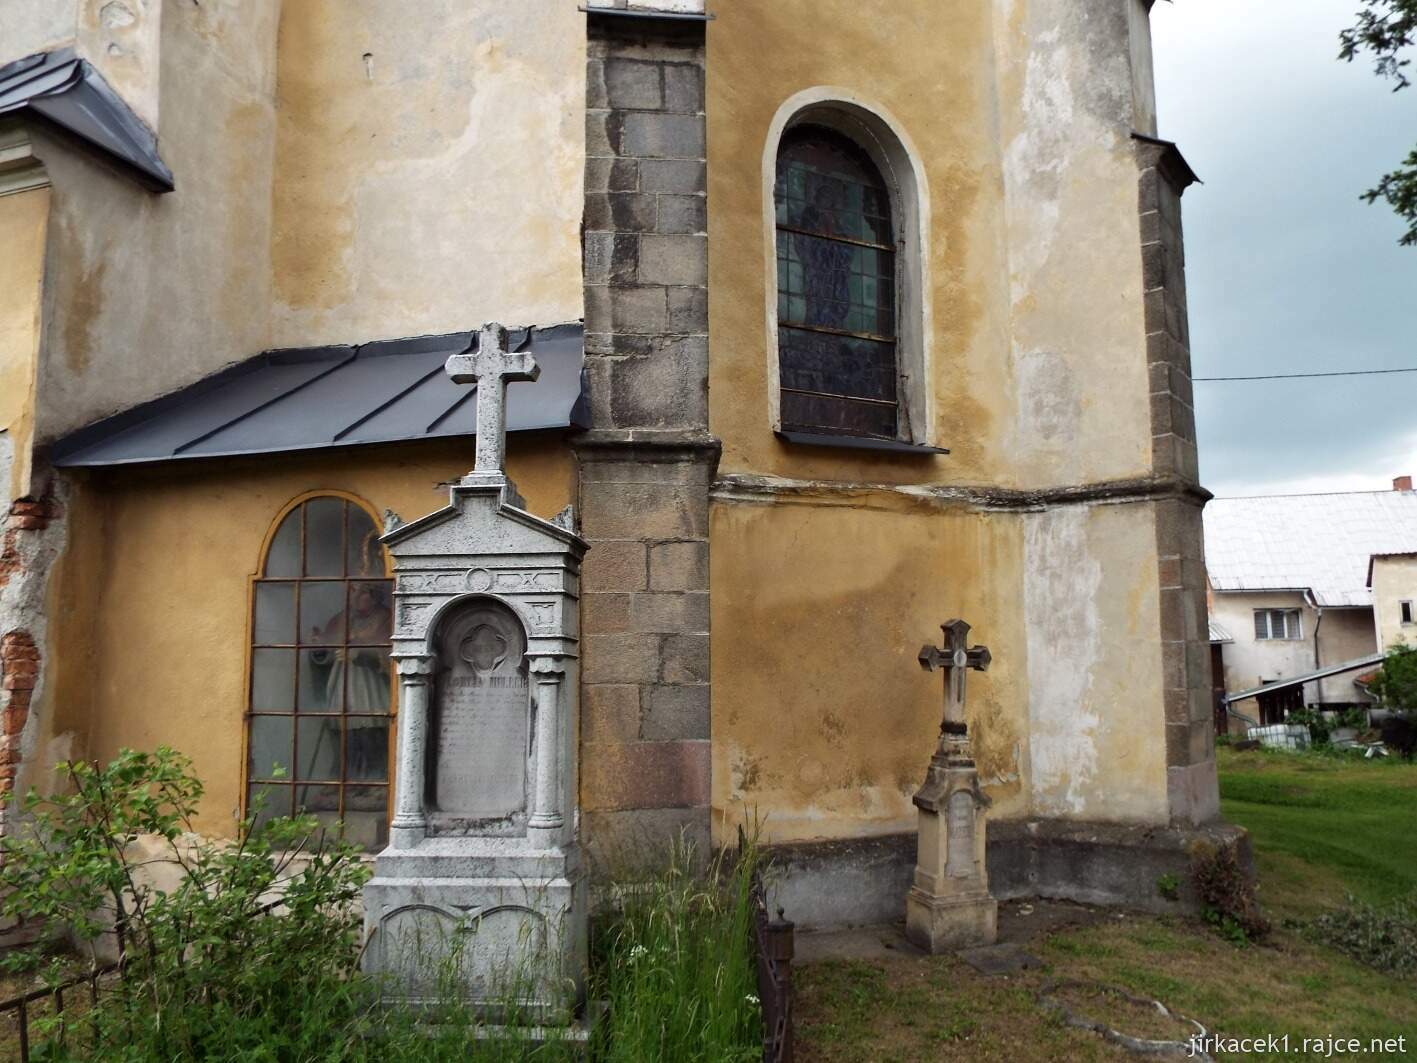 B - Huzová - Kostel sv. Jiljí 09 - pomníky u presbytáře